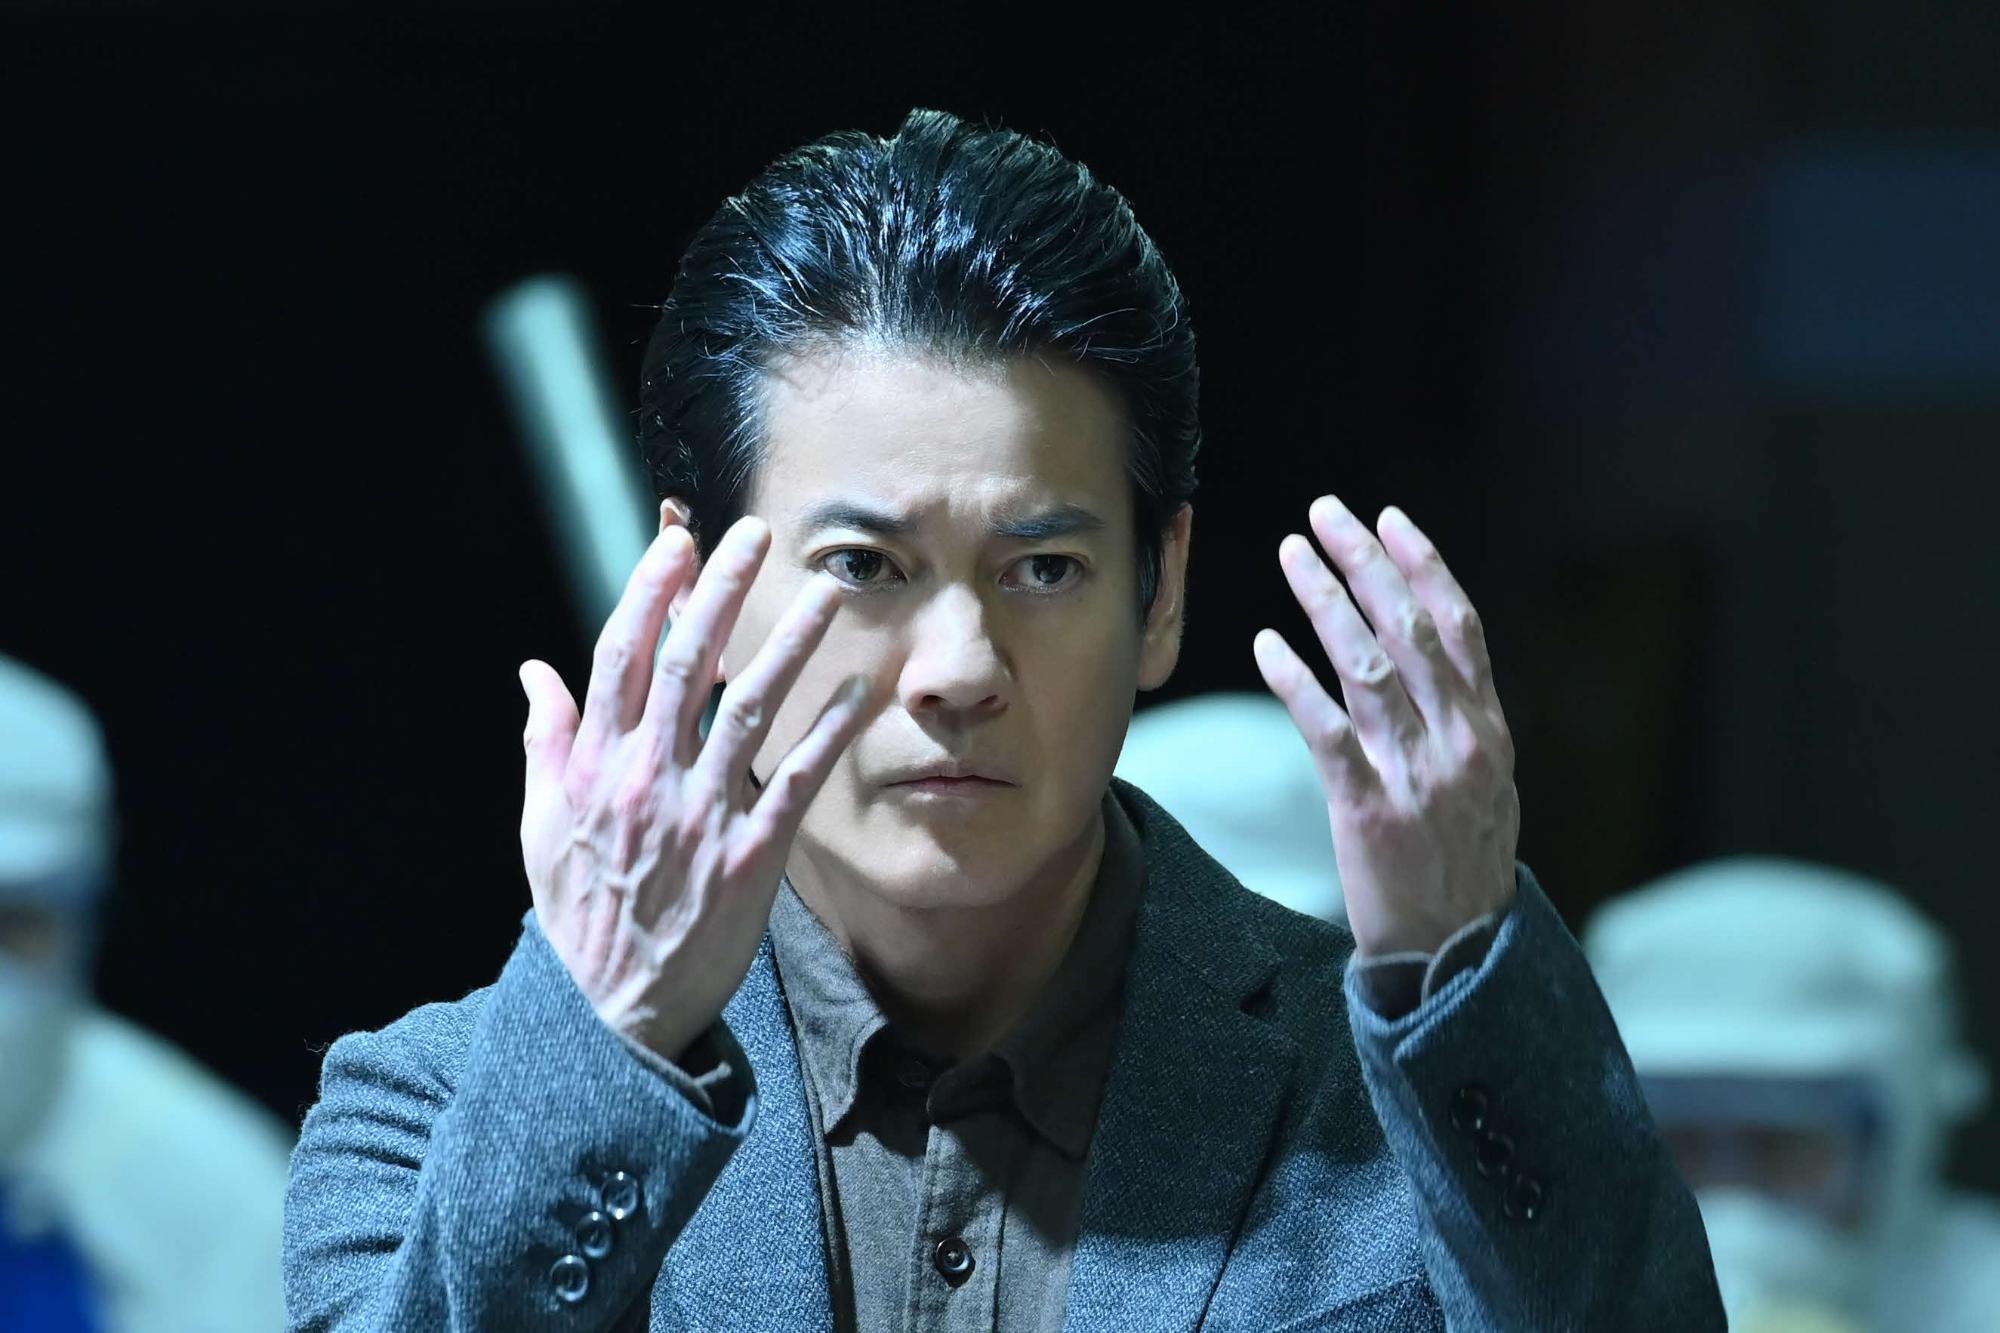 俳優 唐沢寿明さんが両手を顔の前にあげ、真剣な表情を見せているドラマの一場面の写真